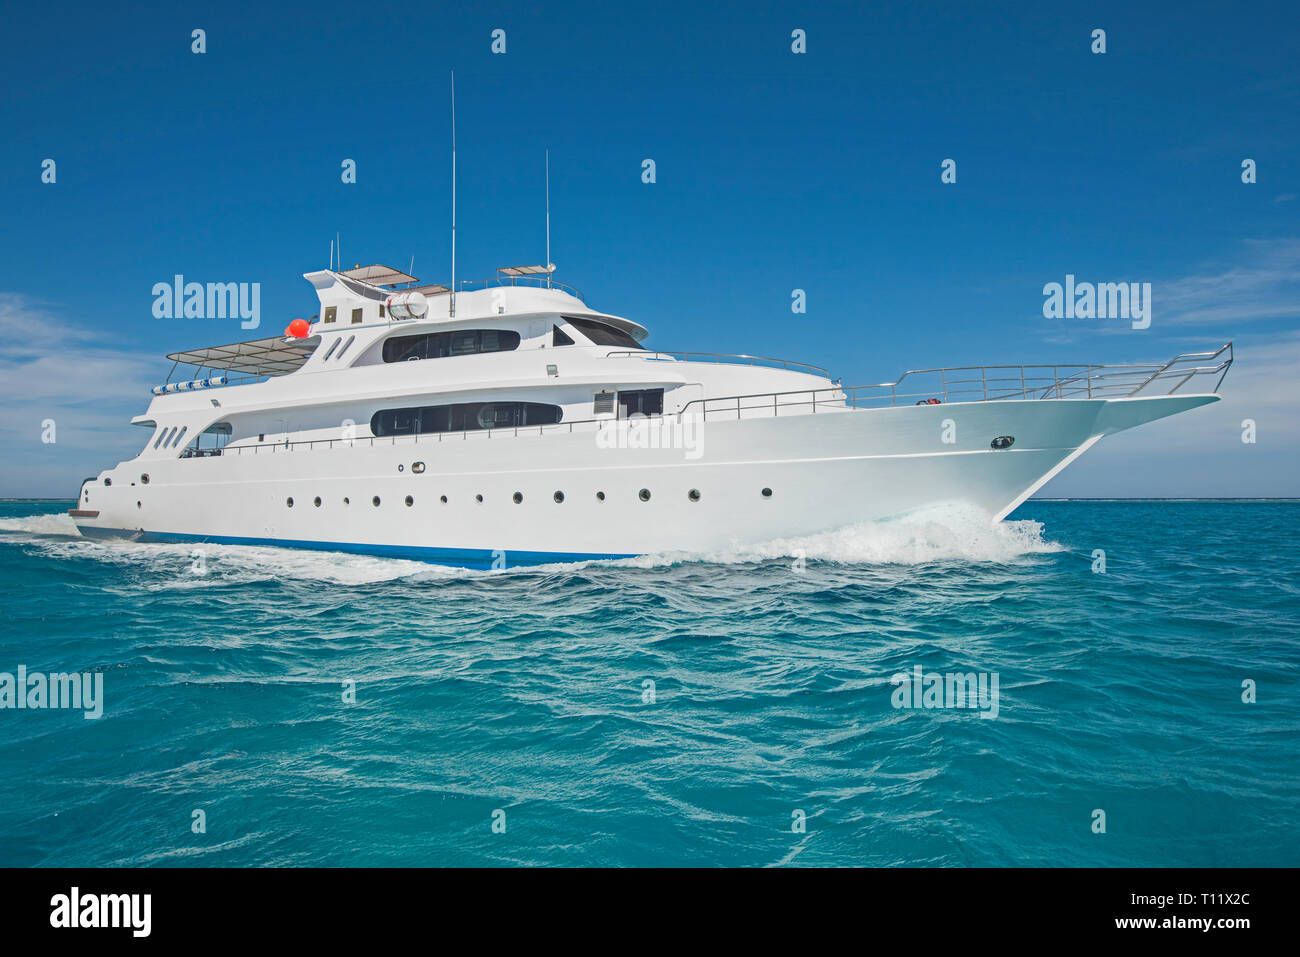 Großen Luxus Motoryacht unterwegs, Segeln auf tropischen Meer Ozean mit blauem Himmel Hintergrund Stockfoto